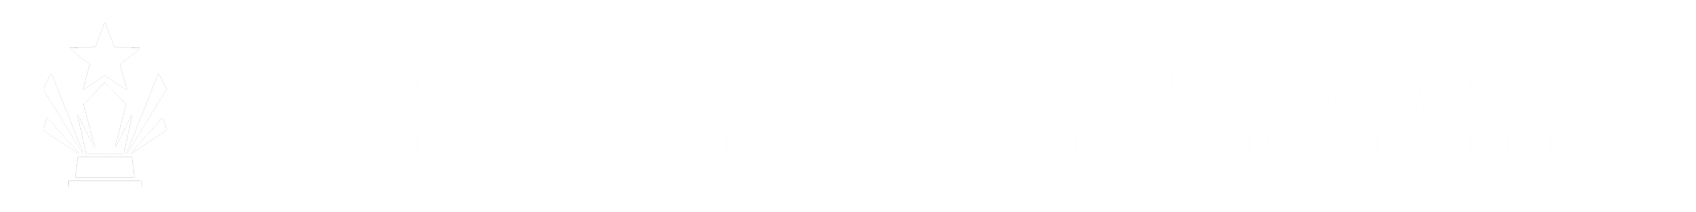 School Sport Awards logo